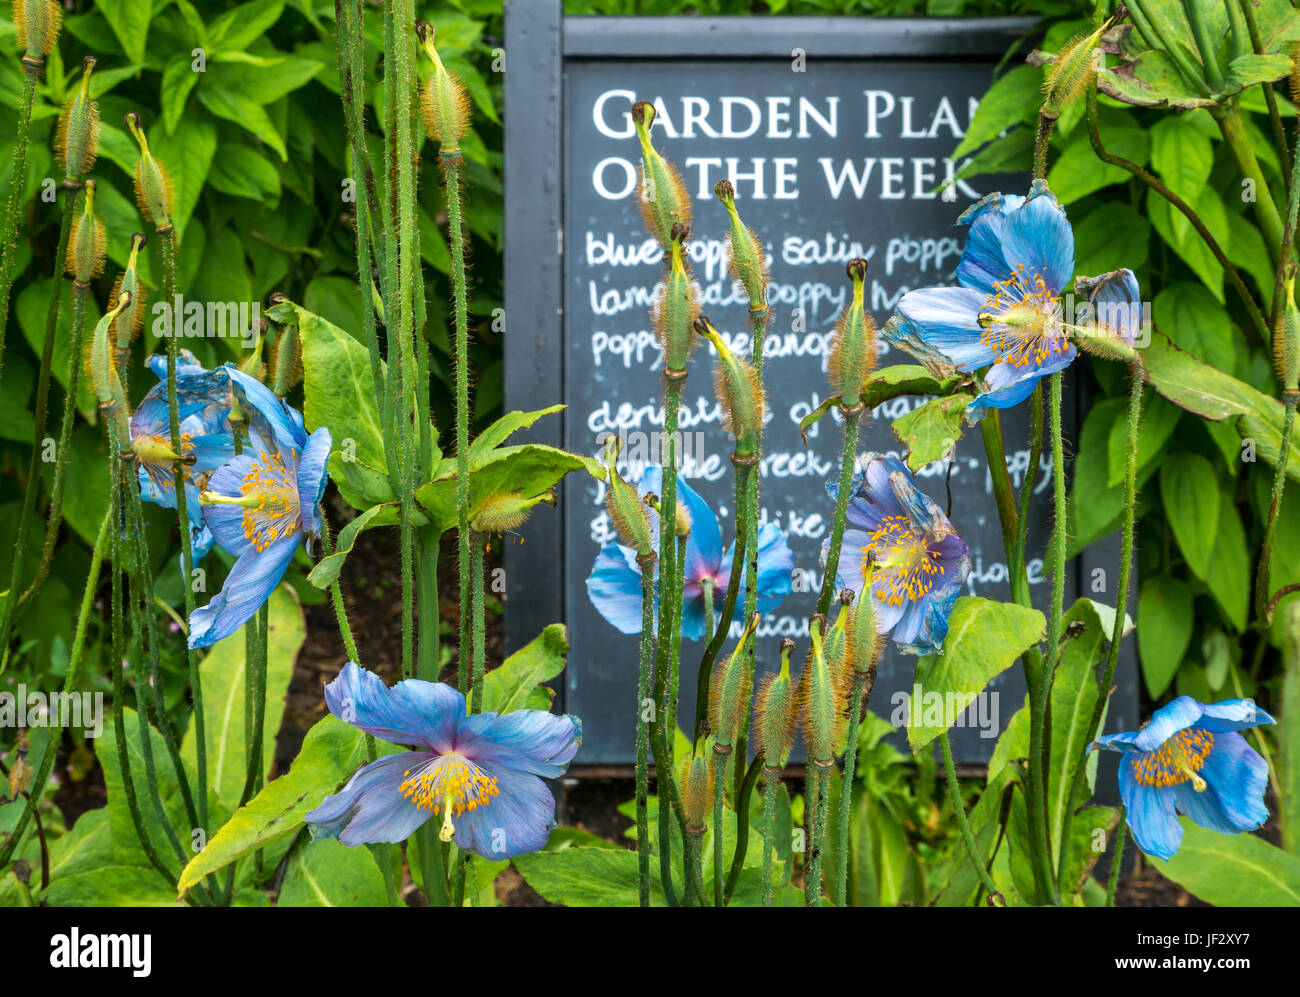 Satin bleu de l'Himalaya, coquelicots, Mecanopsis avec jardin plante de la semaine tableau signe, Dirleton Castle Garden, East Lothian, Scotland, UK Banque D'Images